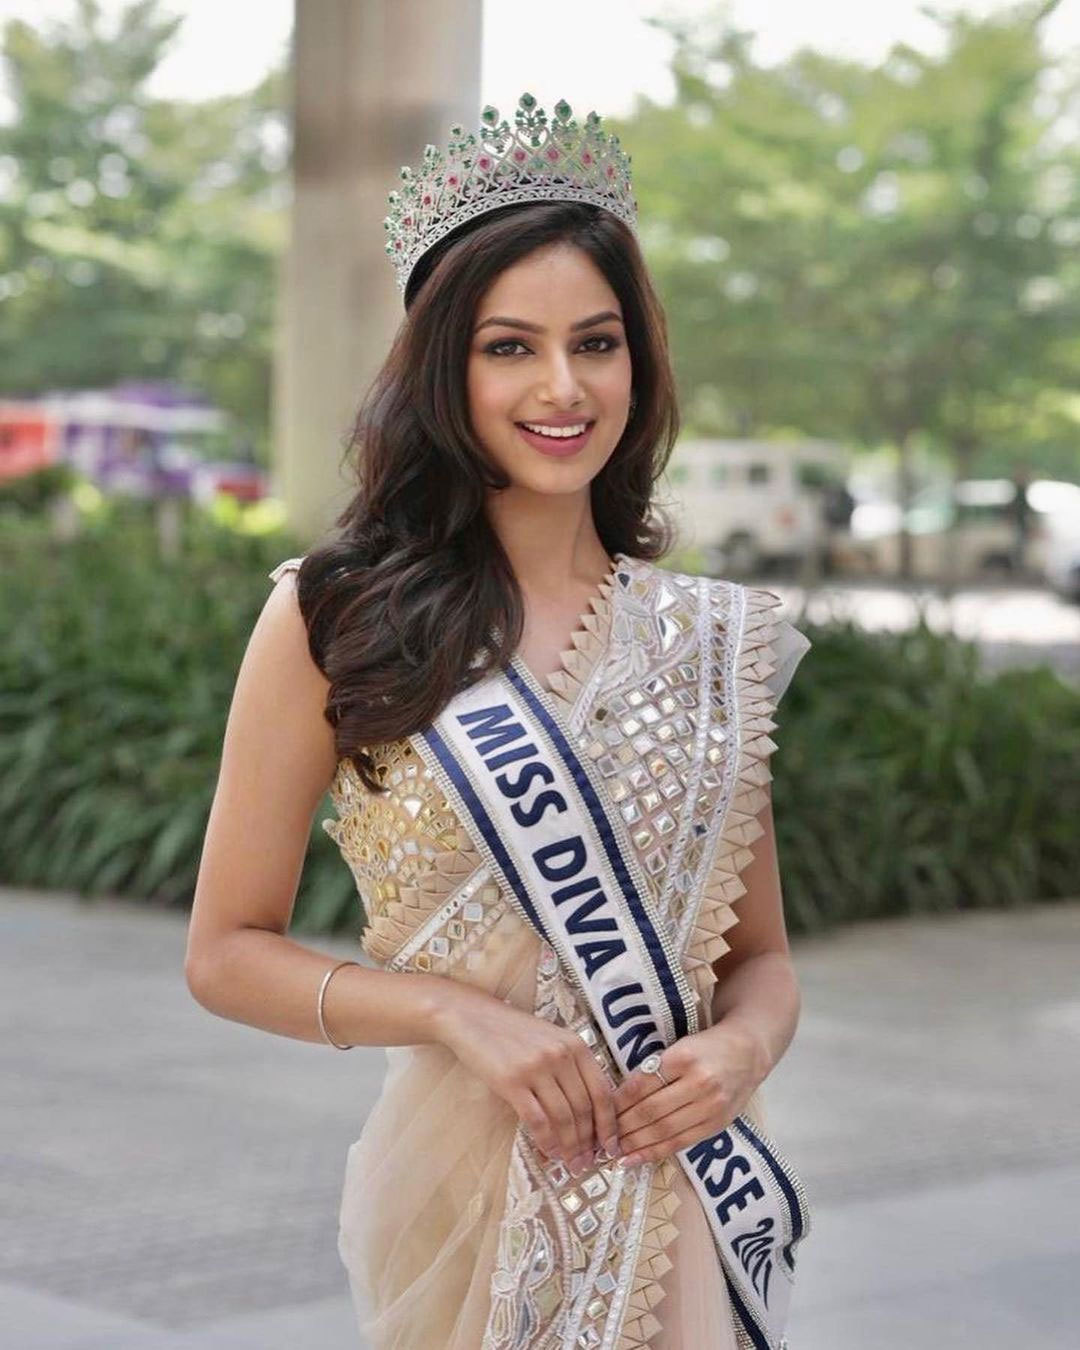 印度美女哈纳兹·桑杜成为了2021年的“环球小姐”冠军。